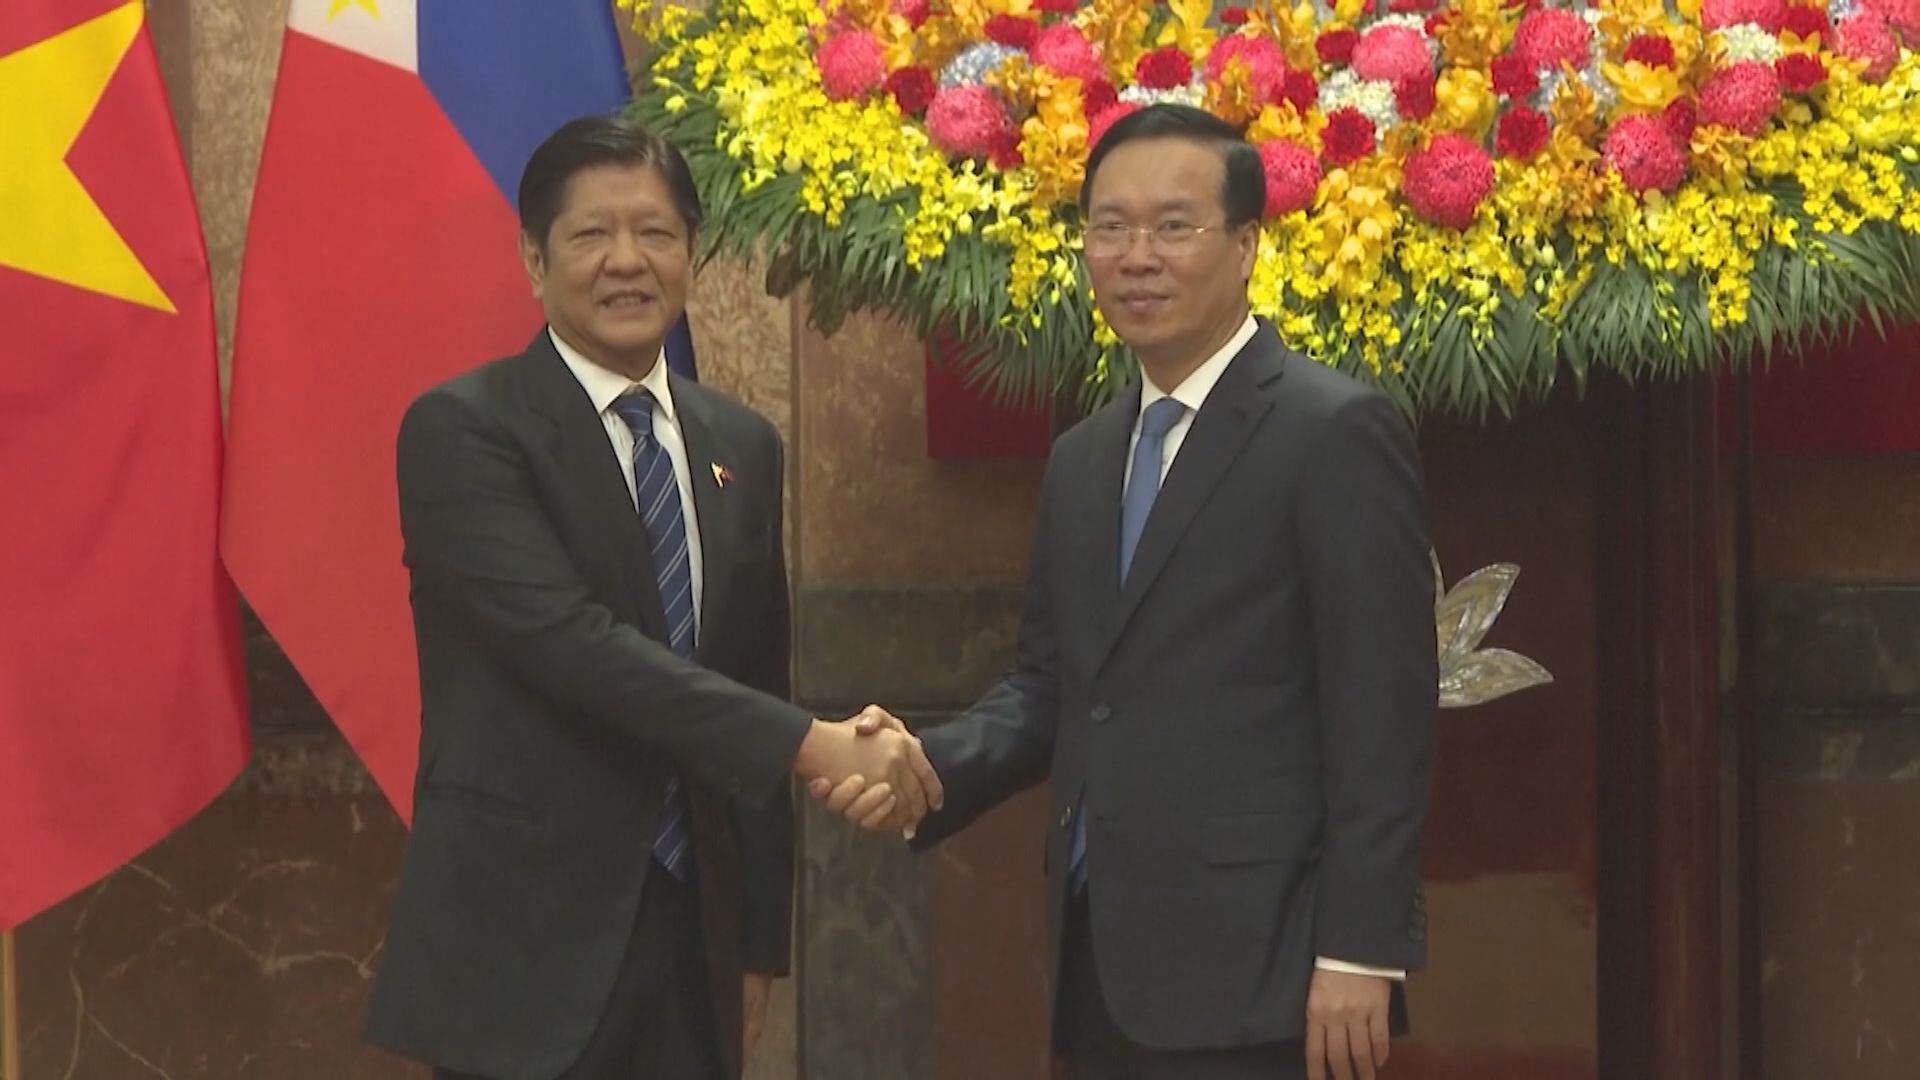 菲總統訪問越南 兩國同意加強合作防止南海發生難以應對事件